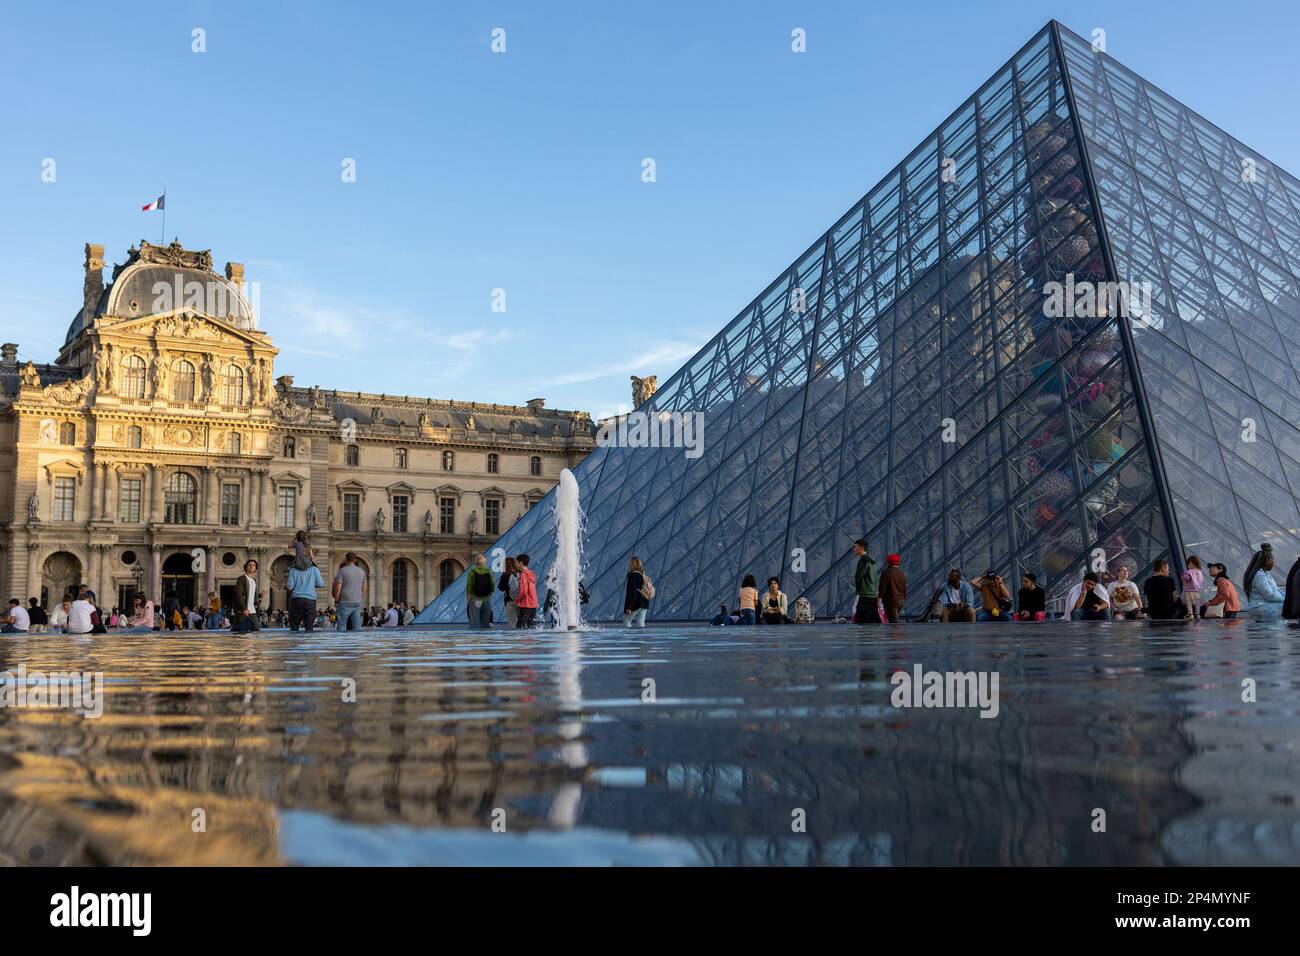 Musée du Louvre. Les touristes marchent sur la place du Musée du Louvre. Banque D'Images